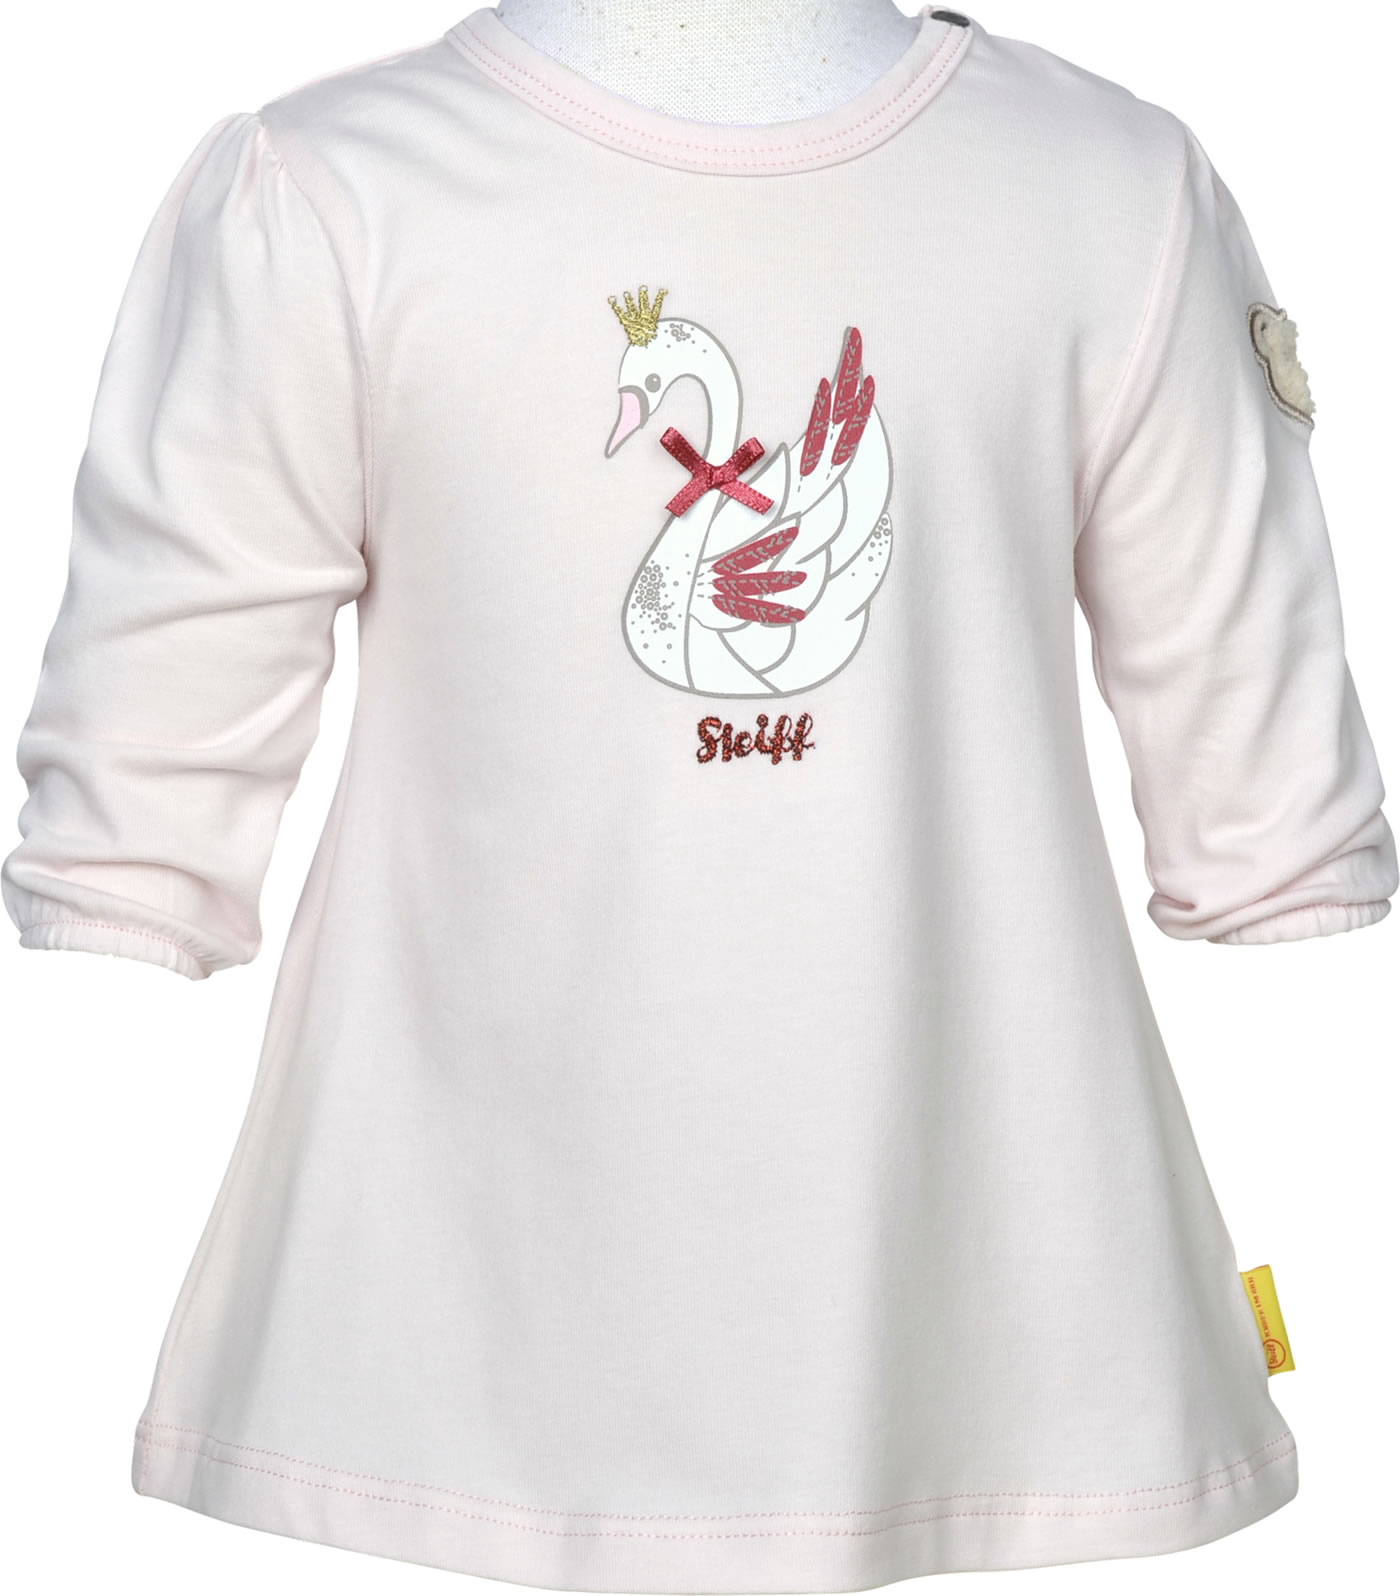 STEIFF® Baby Mädchen T-Shirt Tunika Bär Ringel F//S 62-86 2021 NEU!